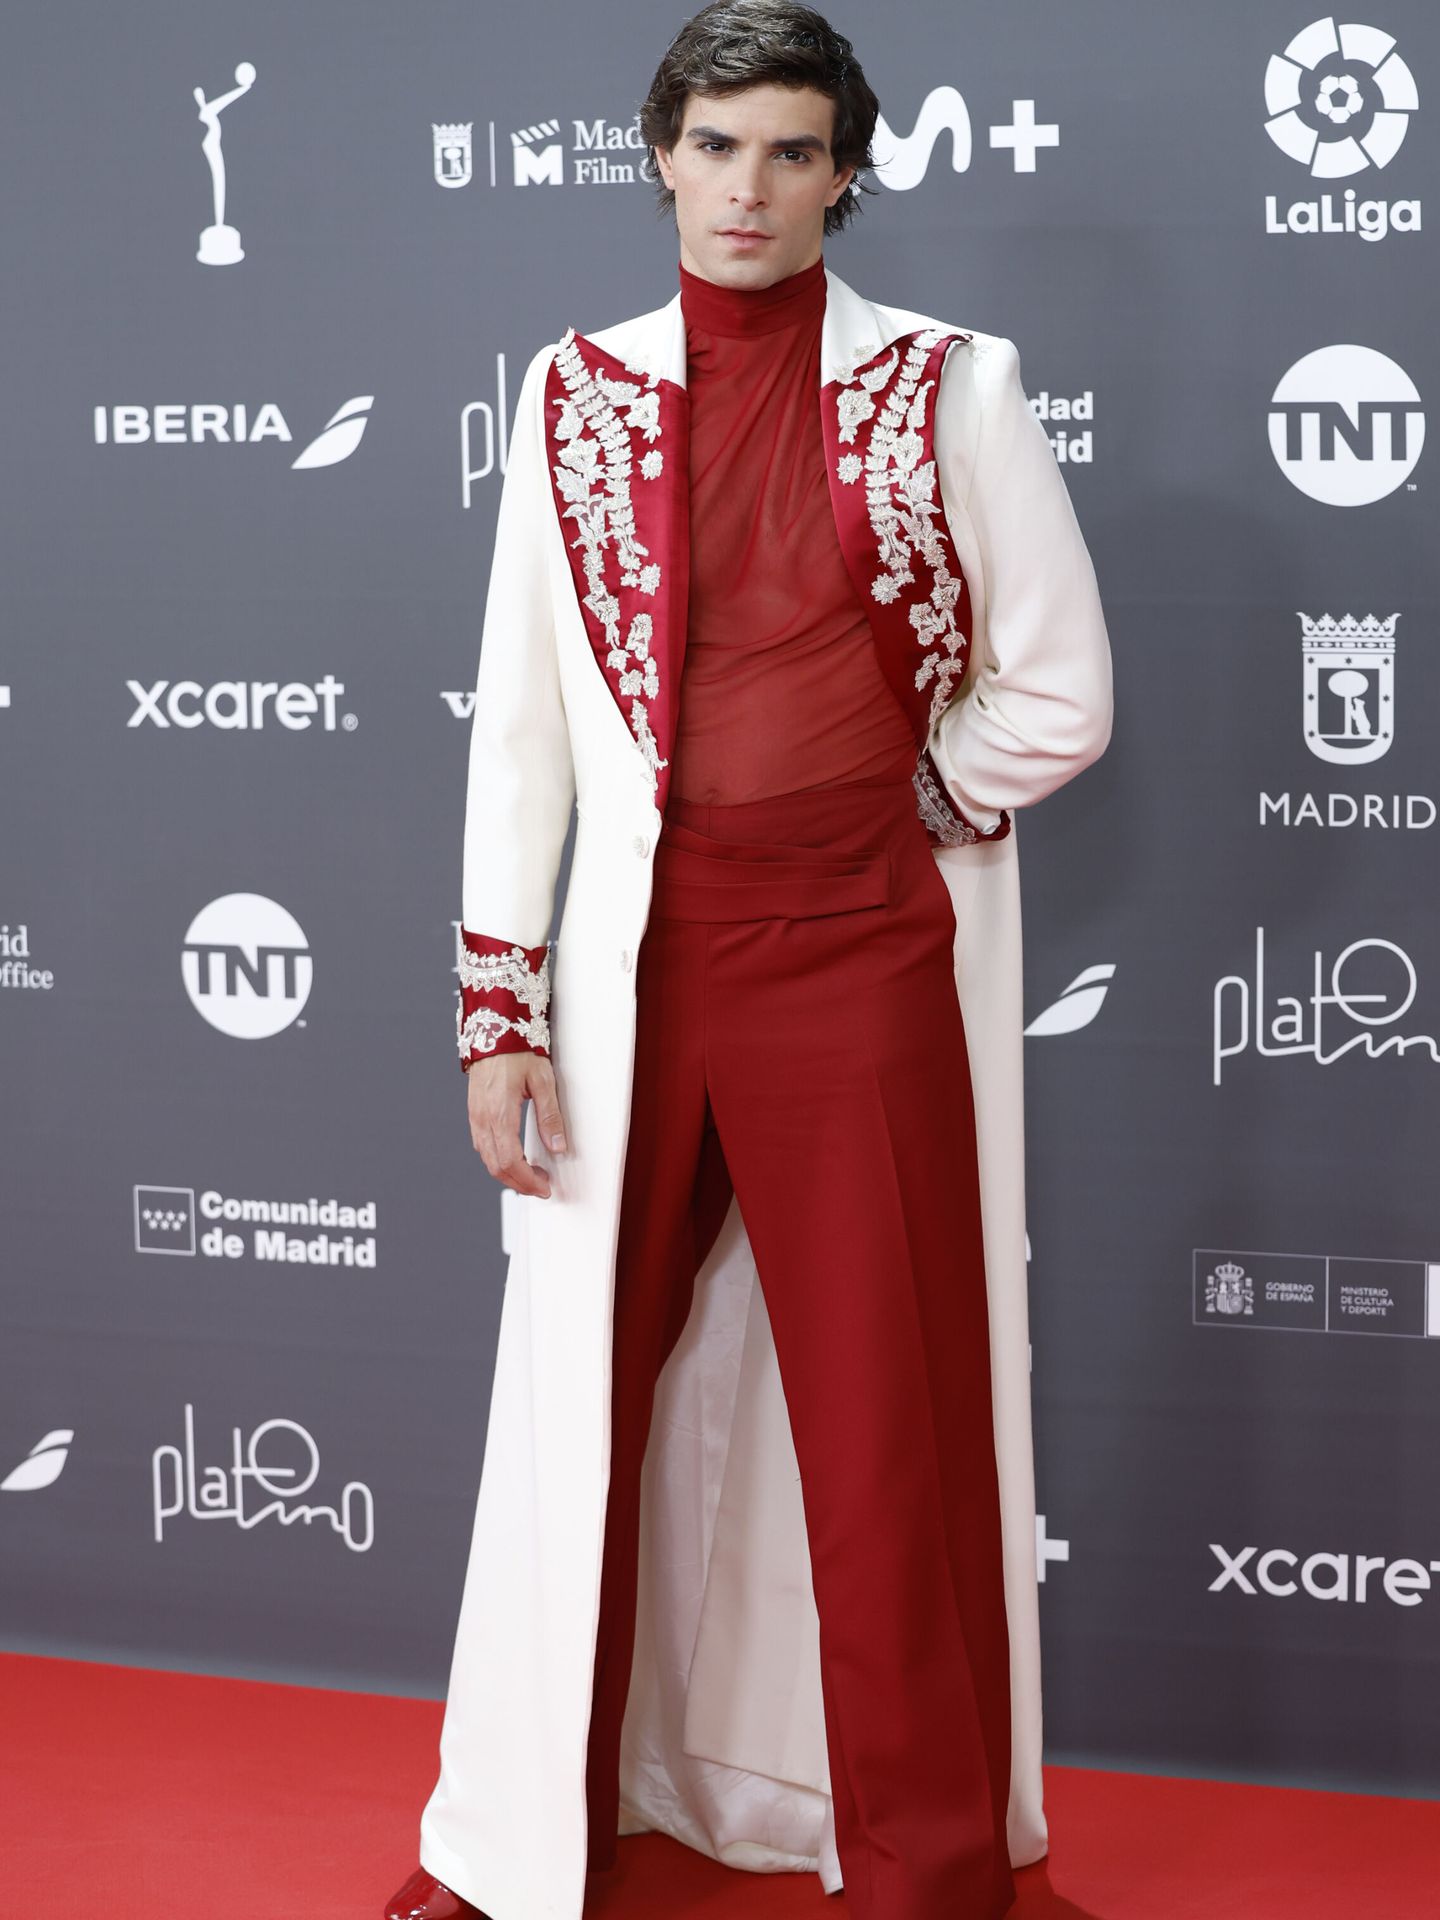 El actor español Jose Pastor posa a su llegada a la ceremonia de entrega de la décima edición de los Premios Platino, este sábado en Madrid (Daniel Gonzalez)